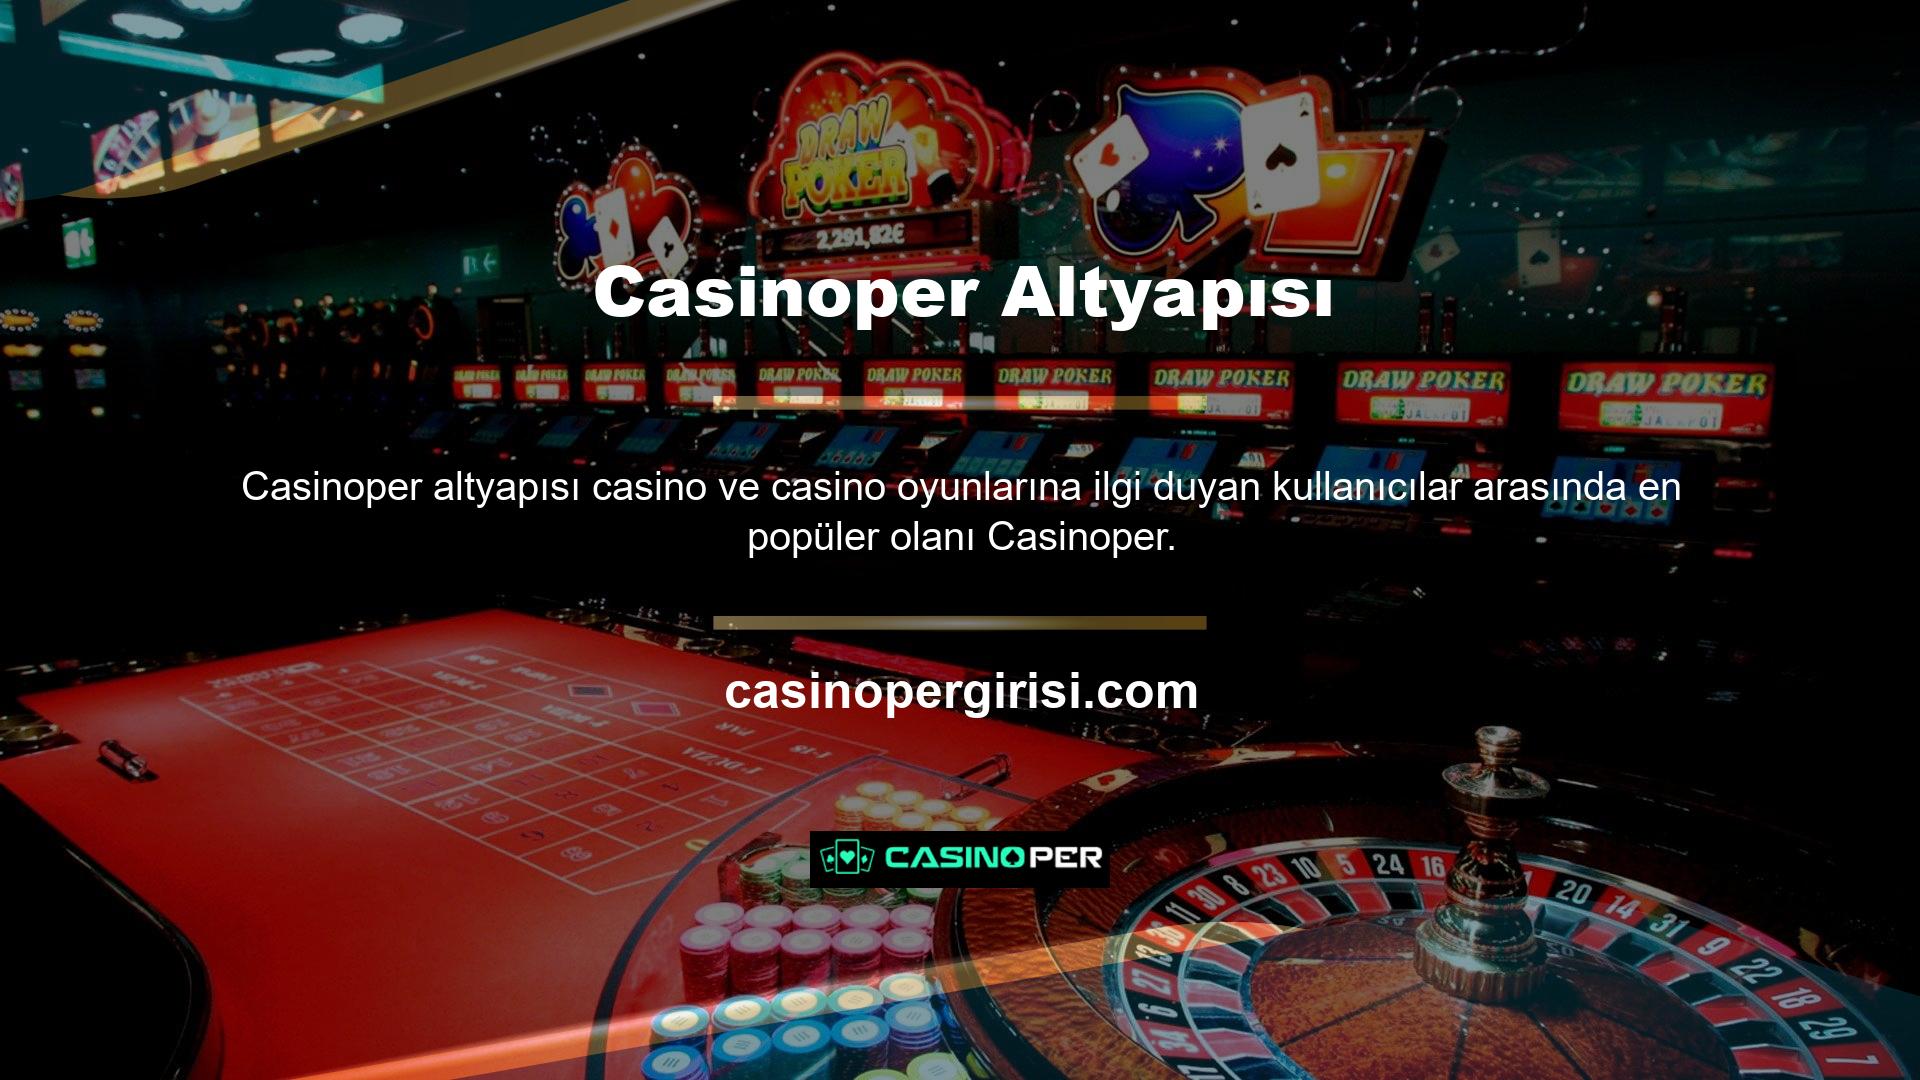 Casinoper hatırı sayılır bir süredir oyun sektörünün bir parçası